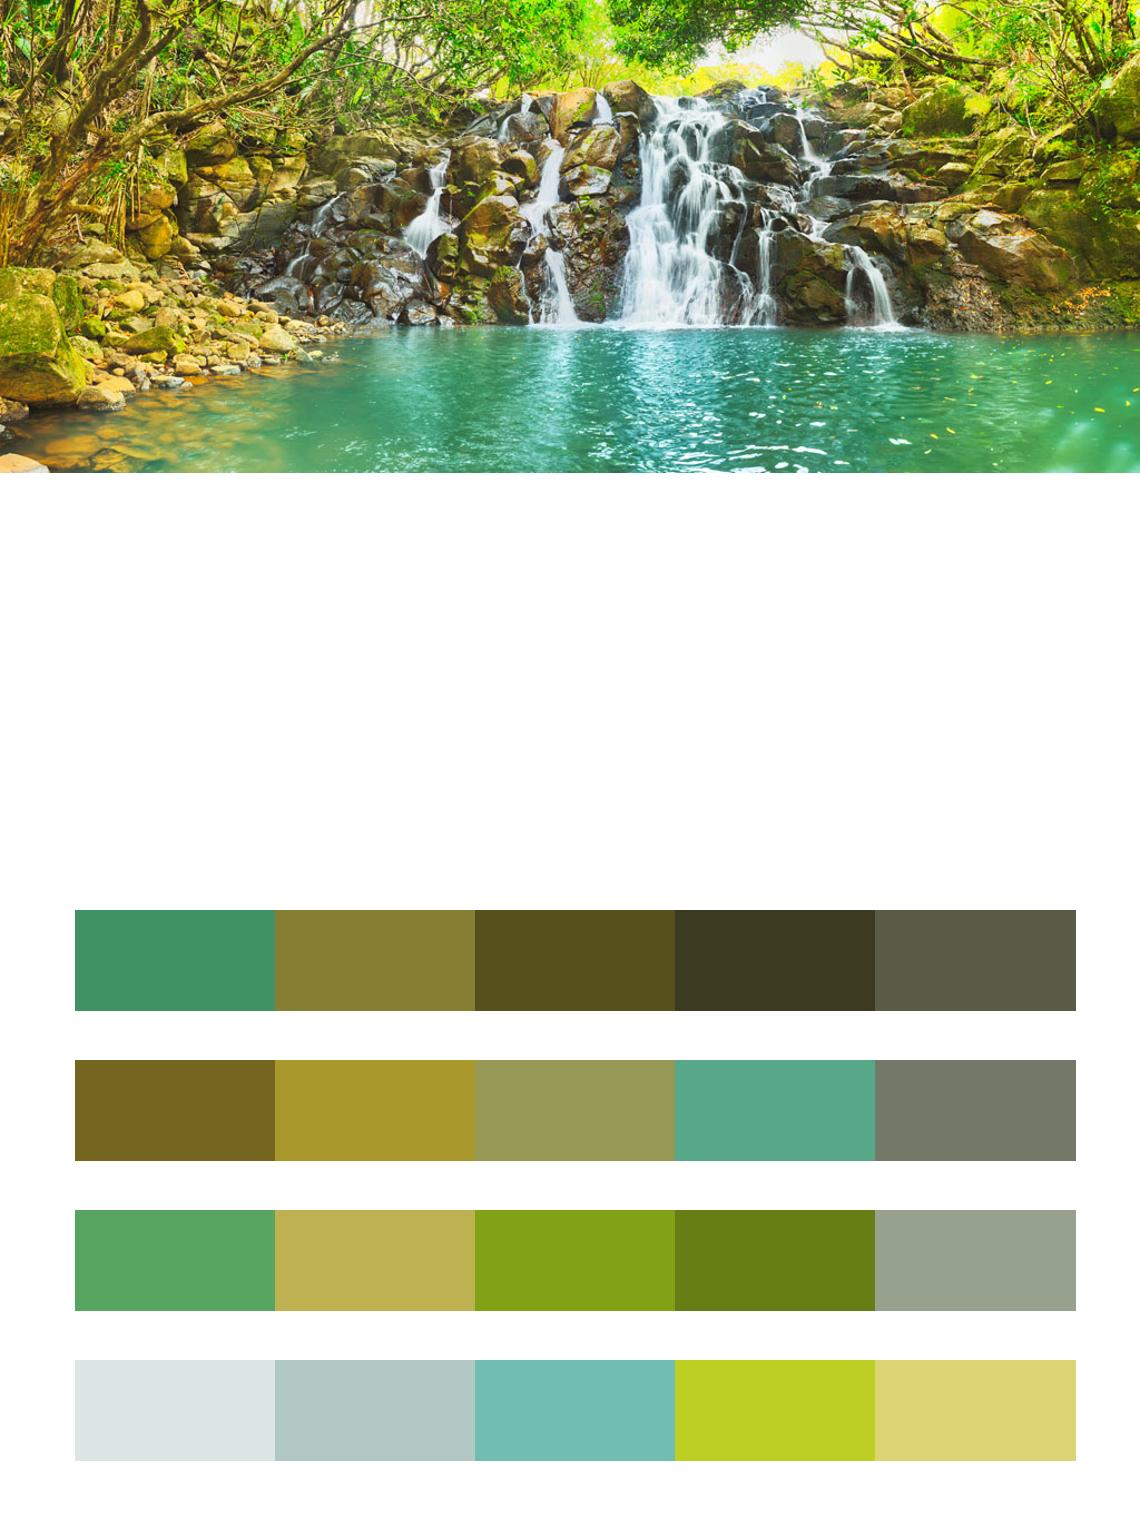 Живописный каскад водопада Вакоас. Остров Маврикий. цвета